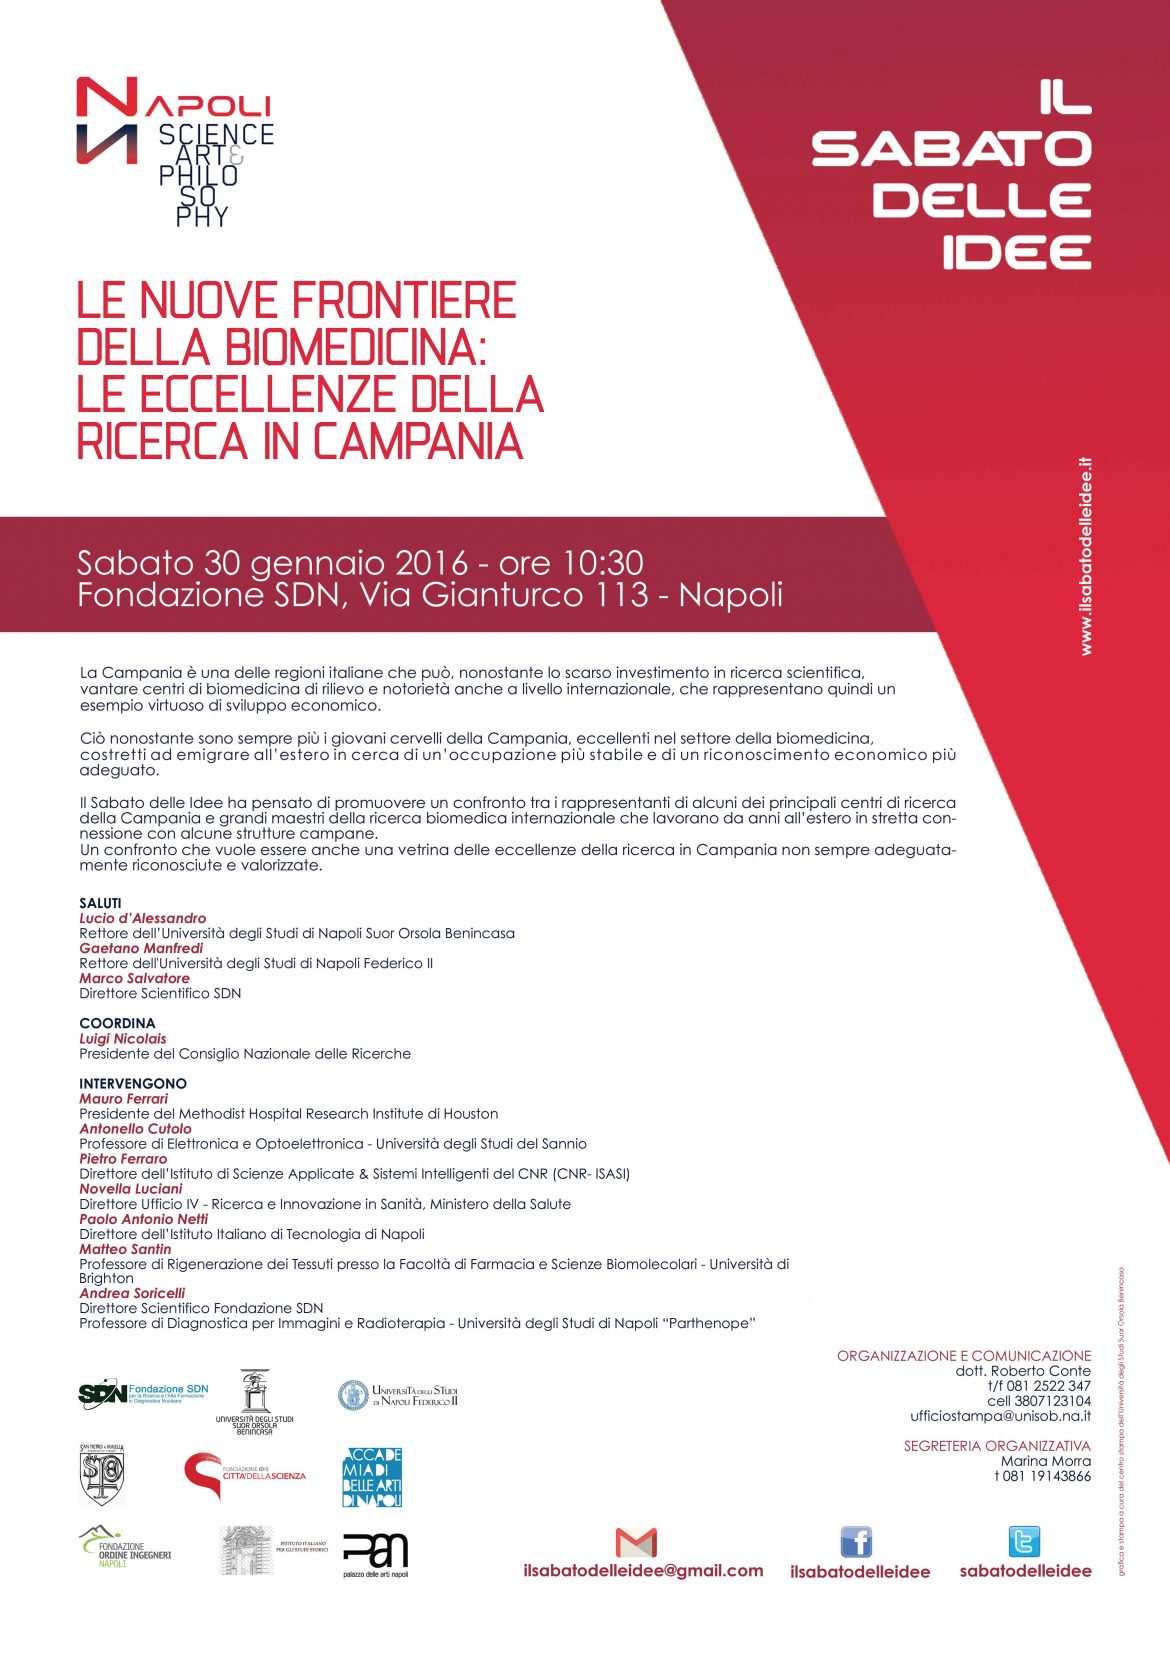 Le nuove frontiere della Biomedicina: le eccellenze della ricerca in Campania